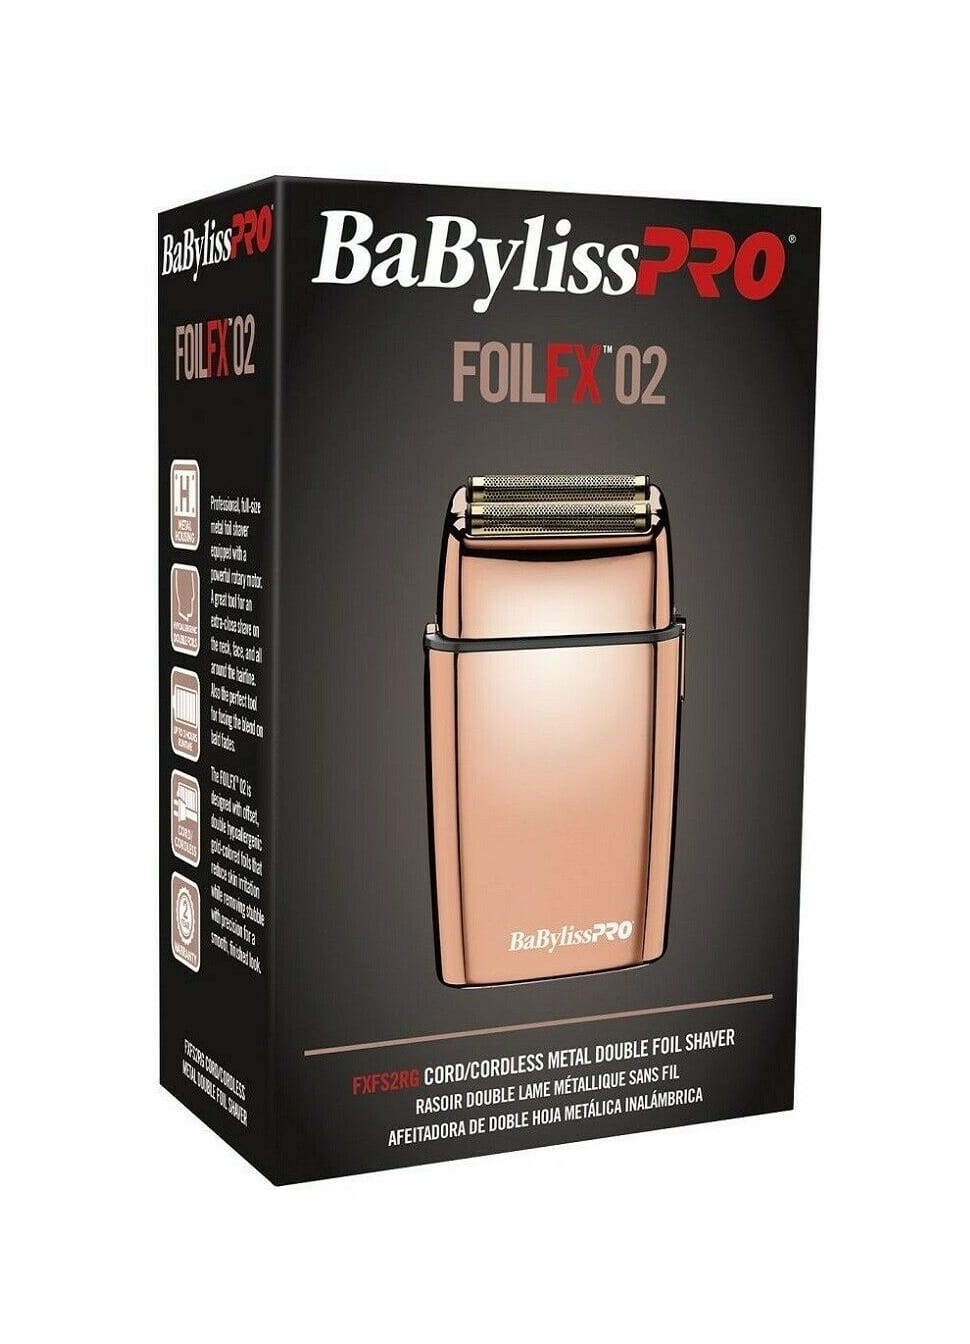 BabylissPro Rose Gold FoilFX02 Cordless Double Foil Shaver #FXFS2RG